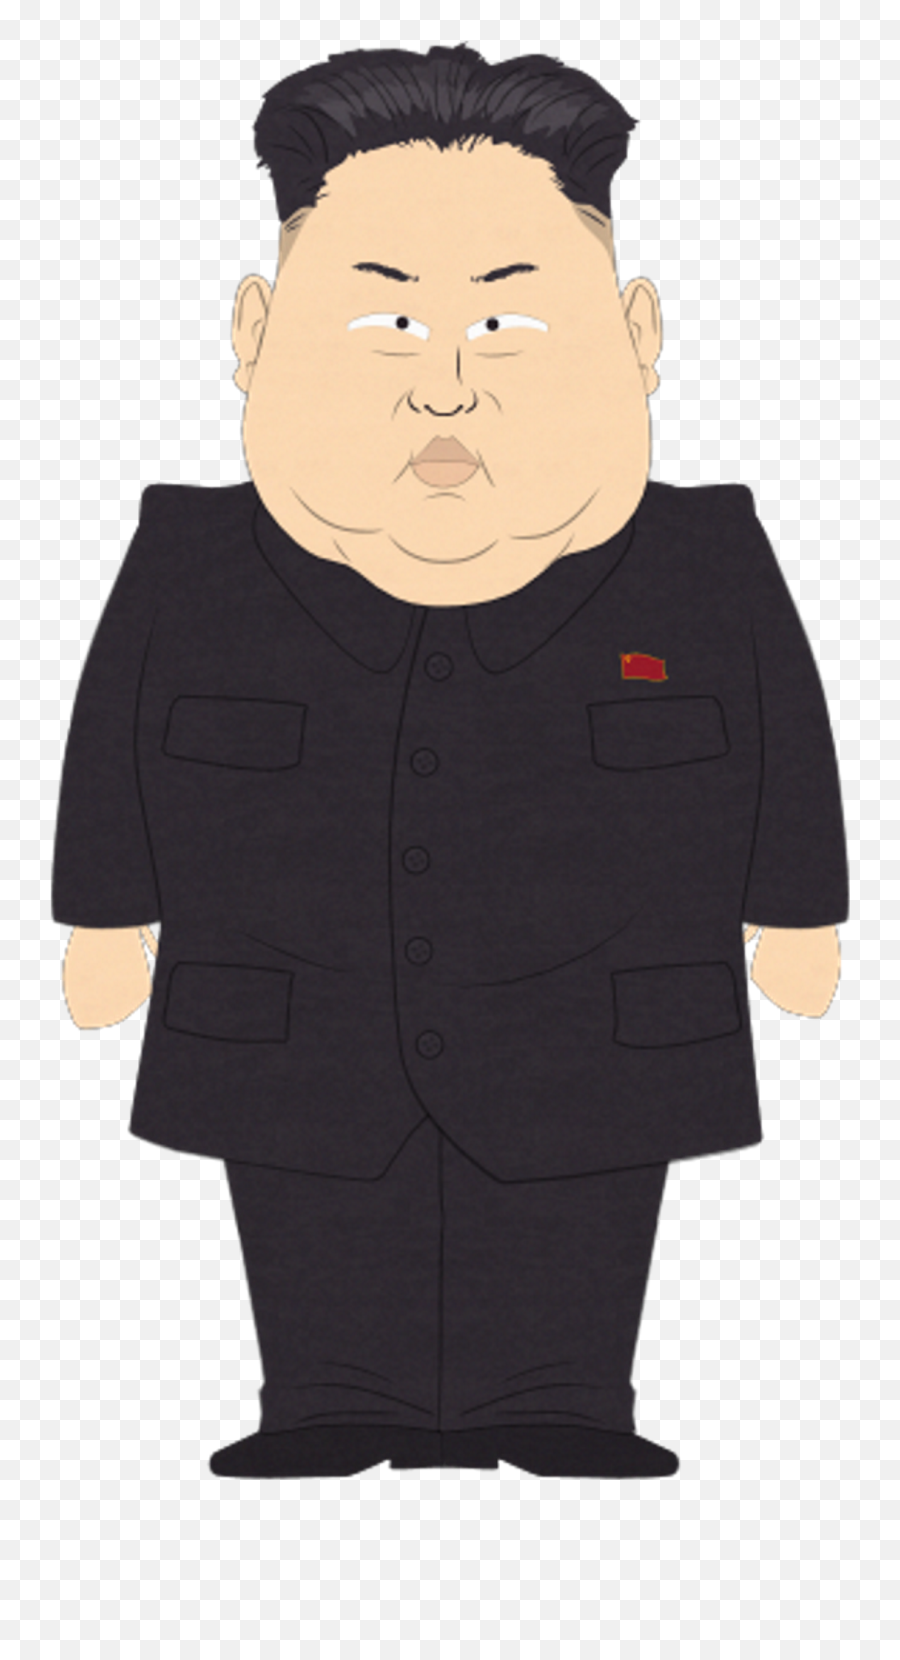 Kim Jong Un Png Transparent - Kim Jong Un South Park,Kim Jong Un Transparent Background